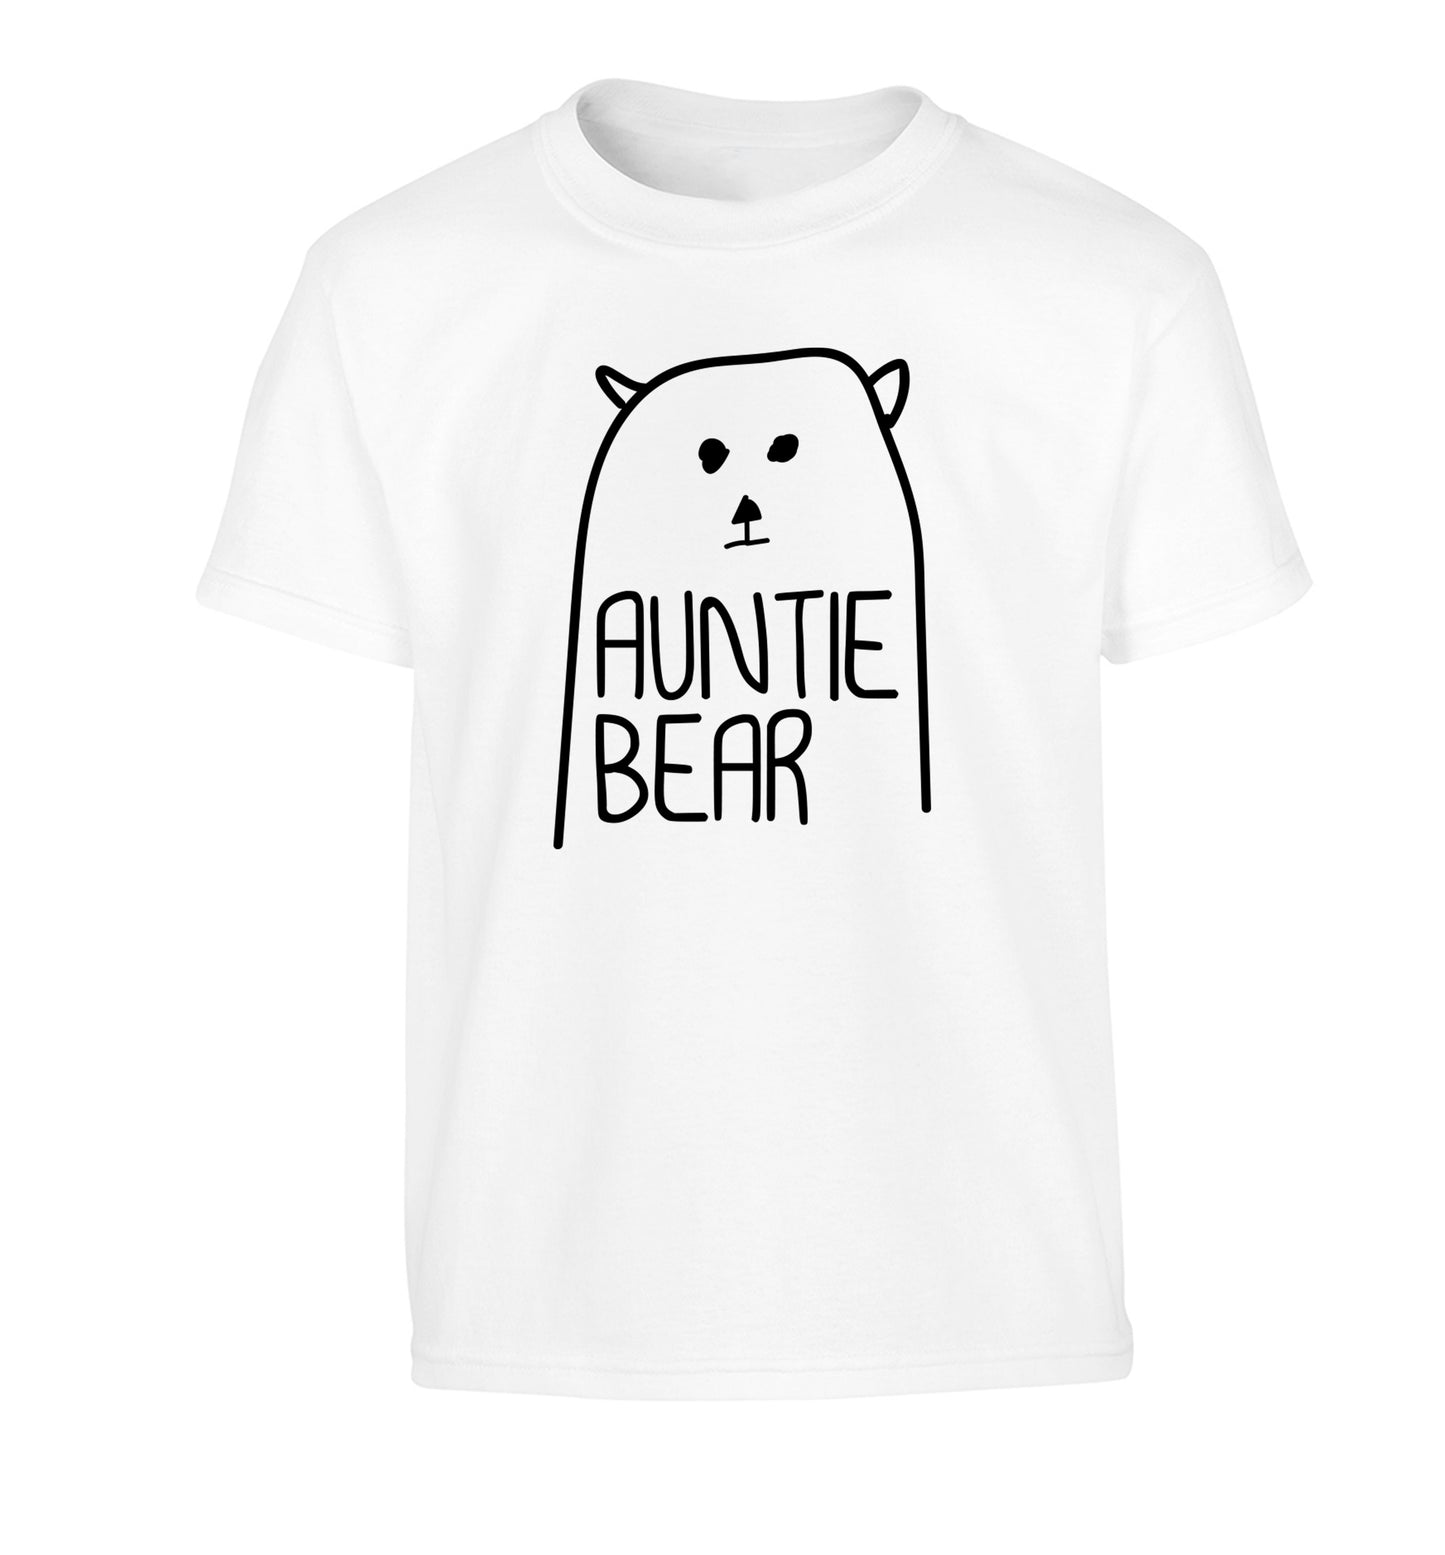 Auntie bear Children's white Tshirt 12-13 Years